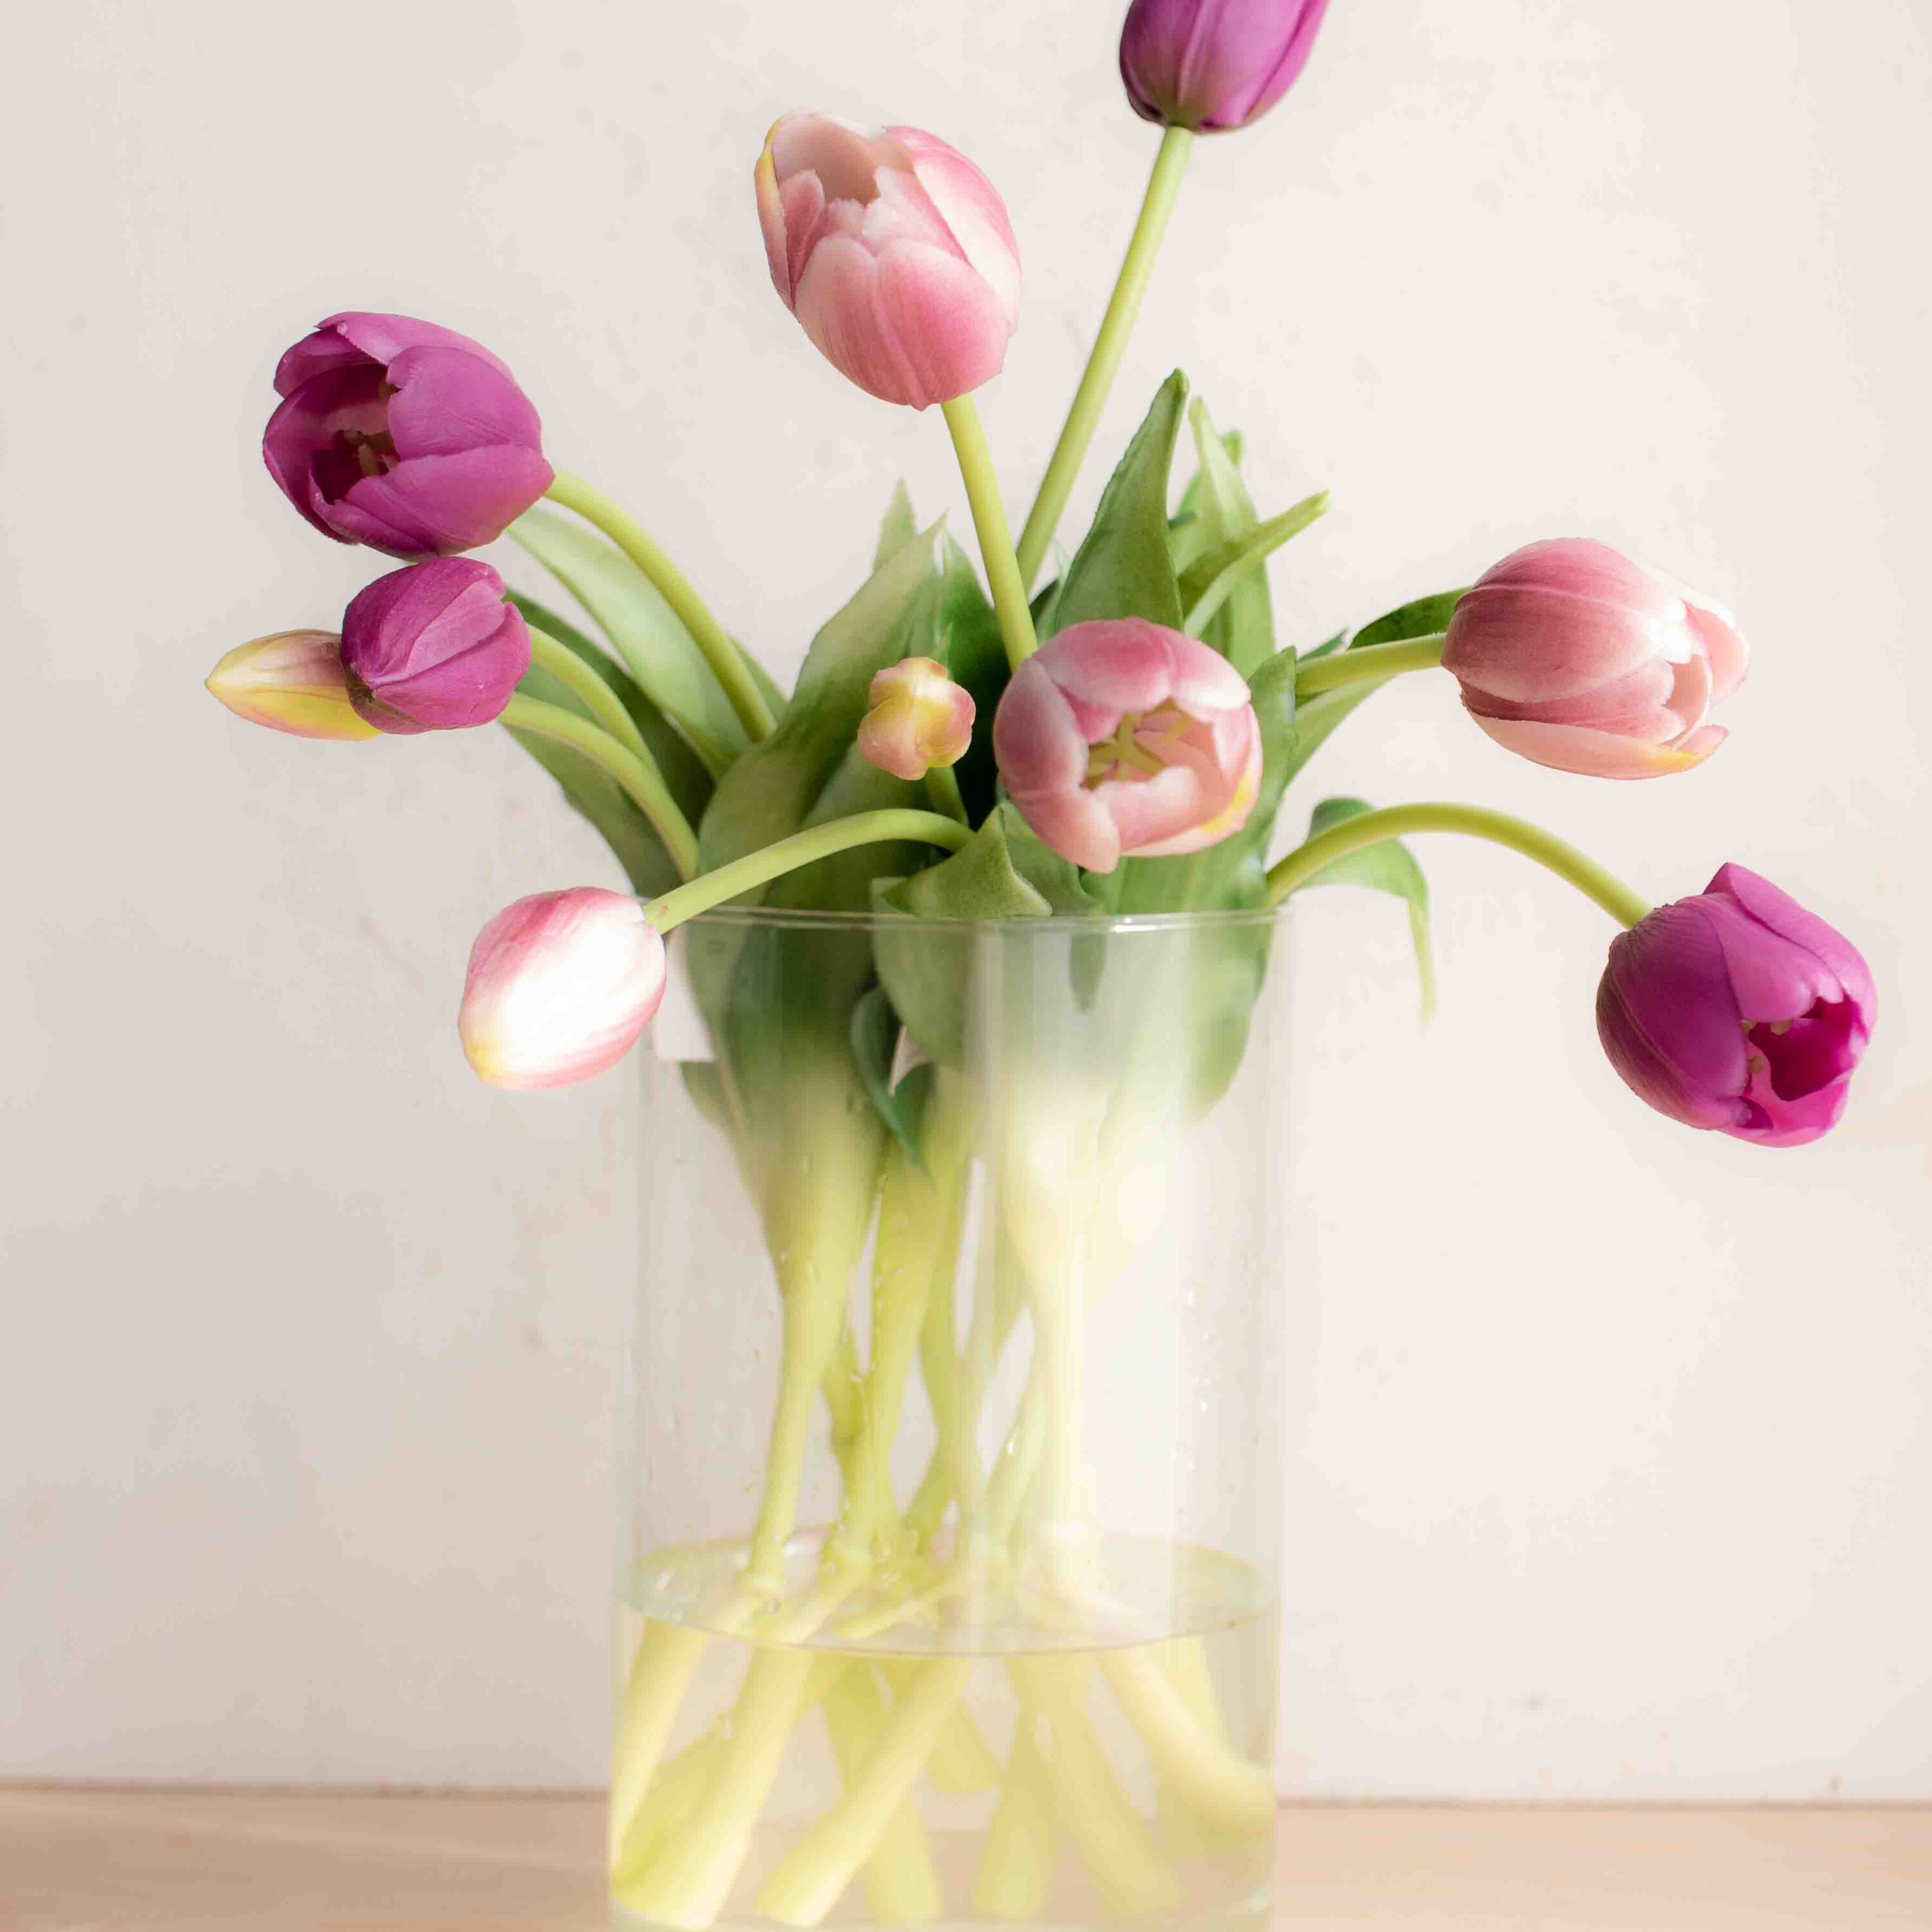 bellissimi tulipani real touch, estremamente realistici colore lilla e violetto